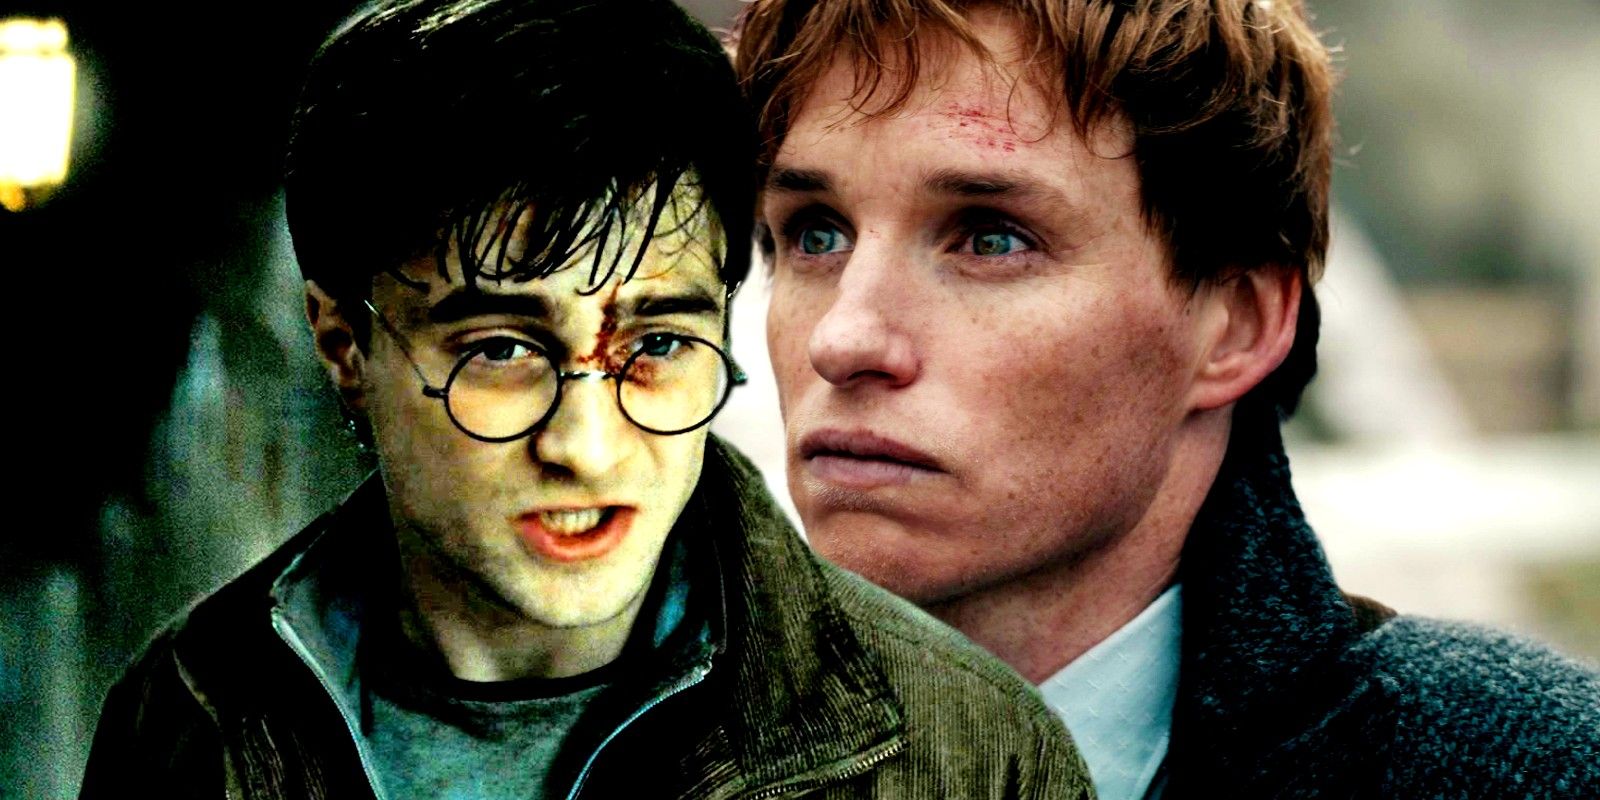 El director de Harry Potter que hizo 7 películas del mundo mágico habla sobre su posible regreso